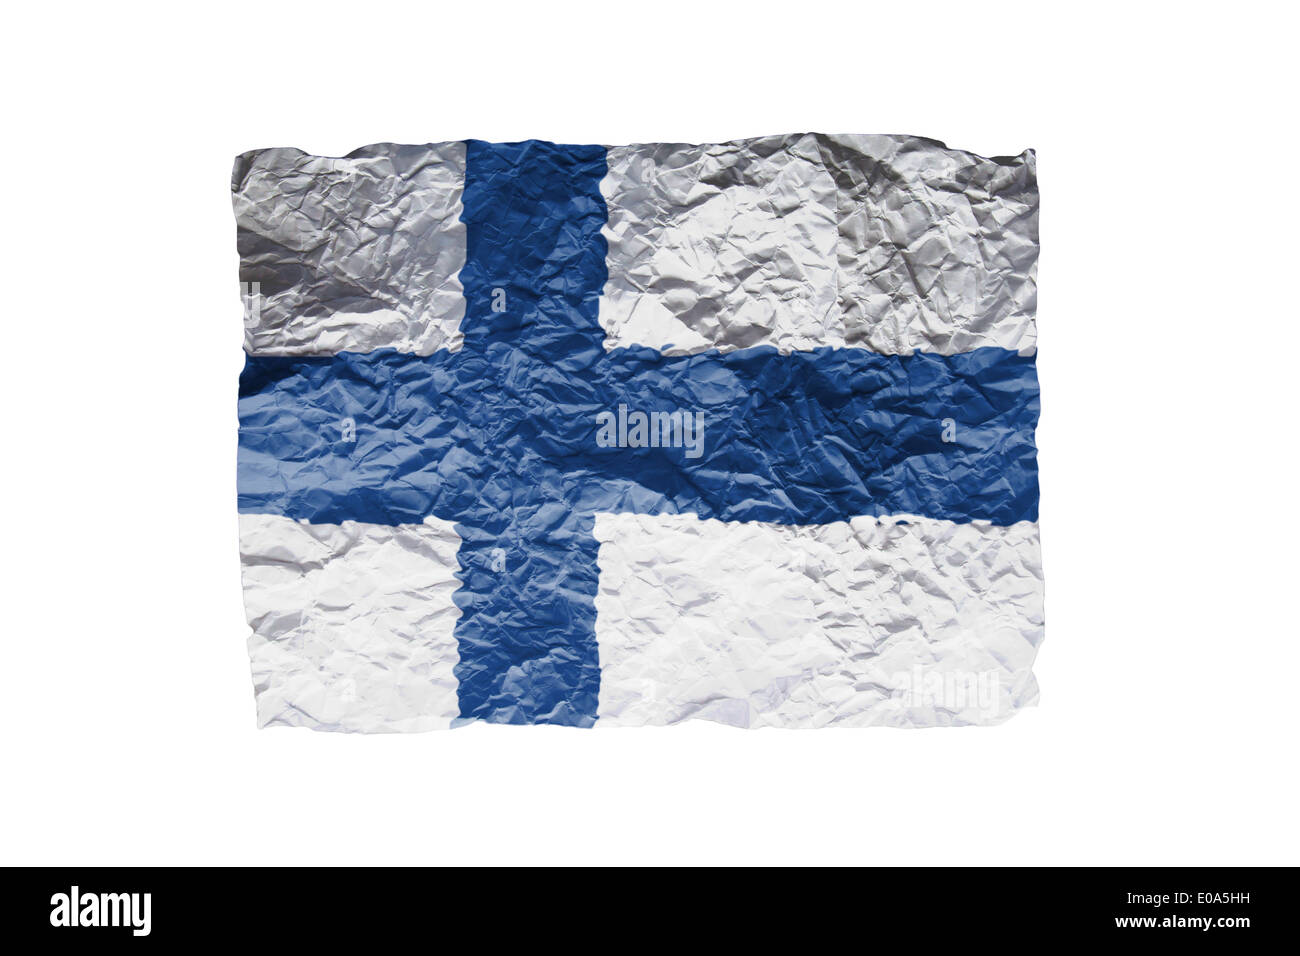 Drapeau finlandais Banque d'images détourées - Page 2 - Alamy